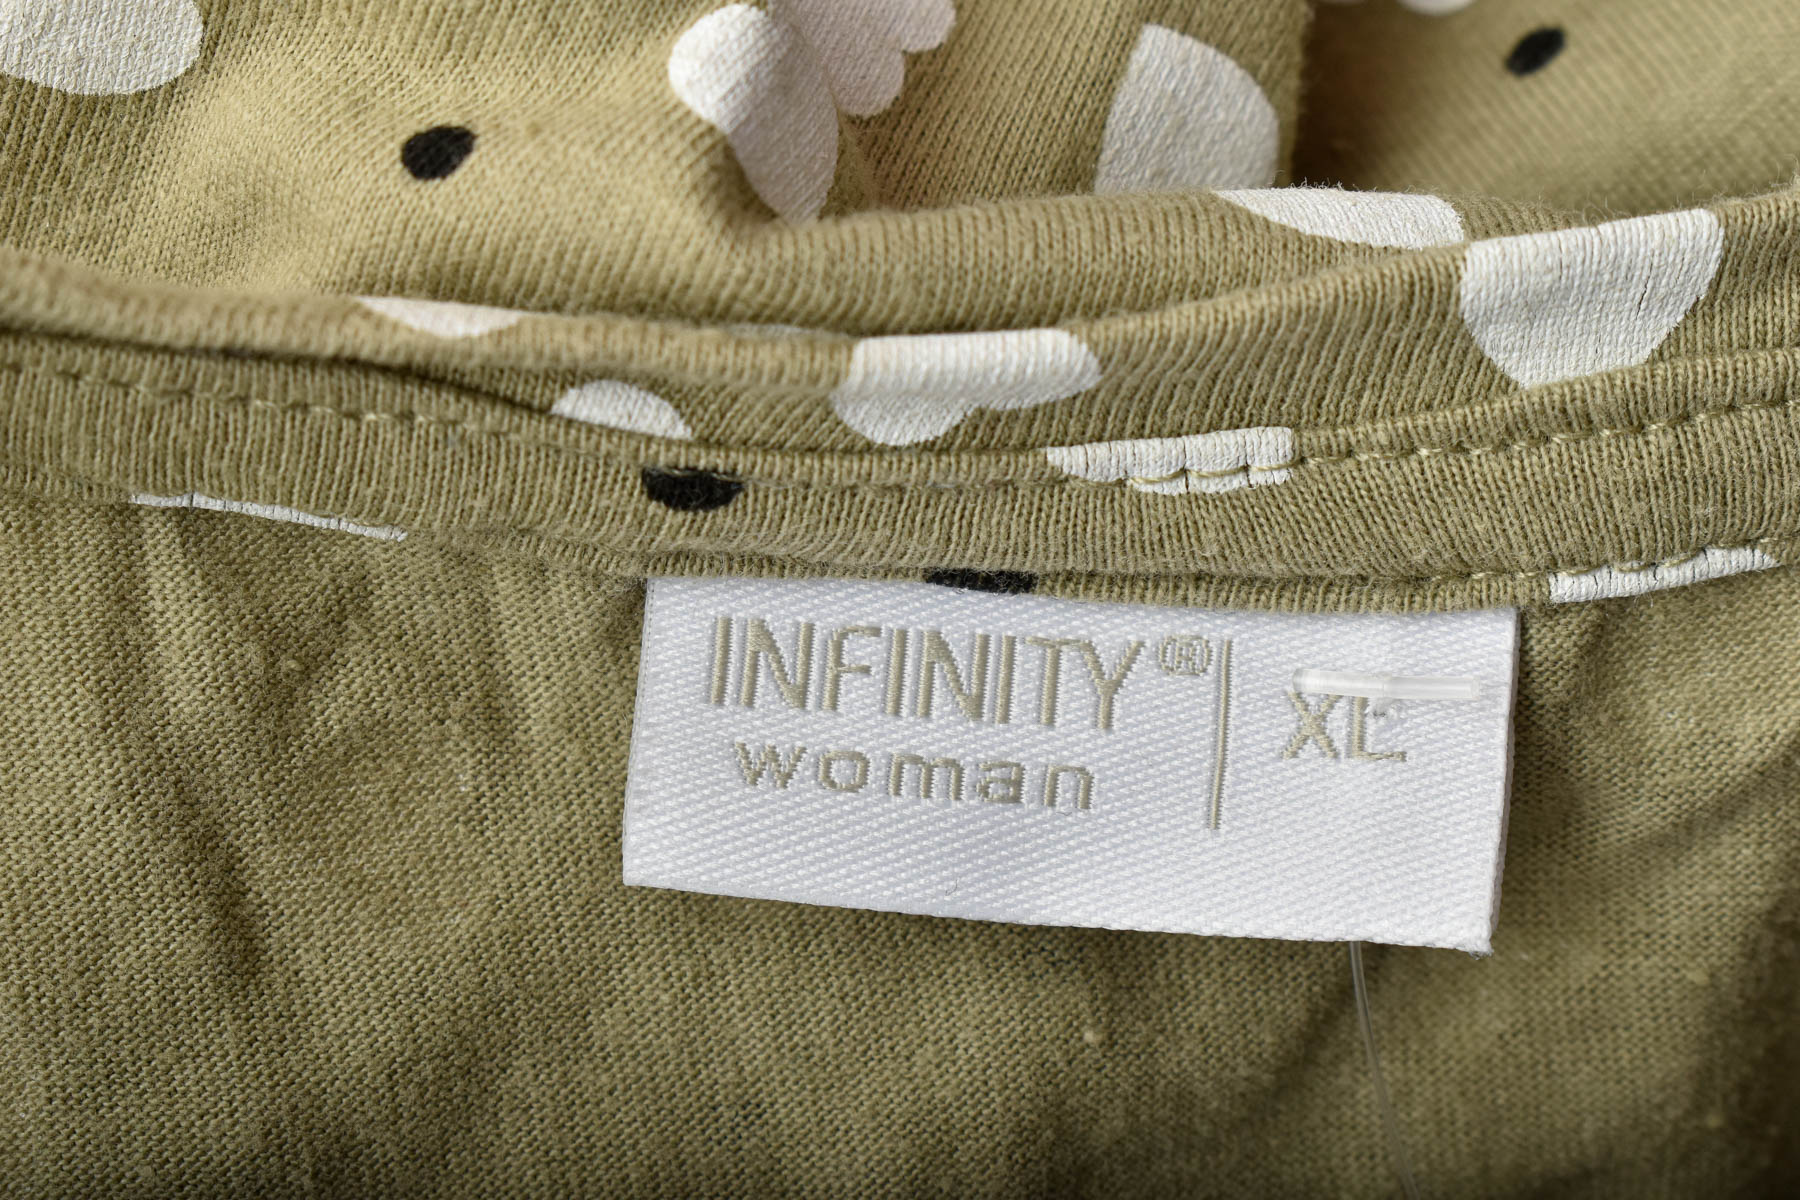 Γυναικεία μπλούζα - Infinity Woman - 2